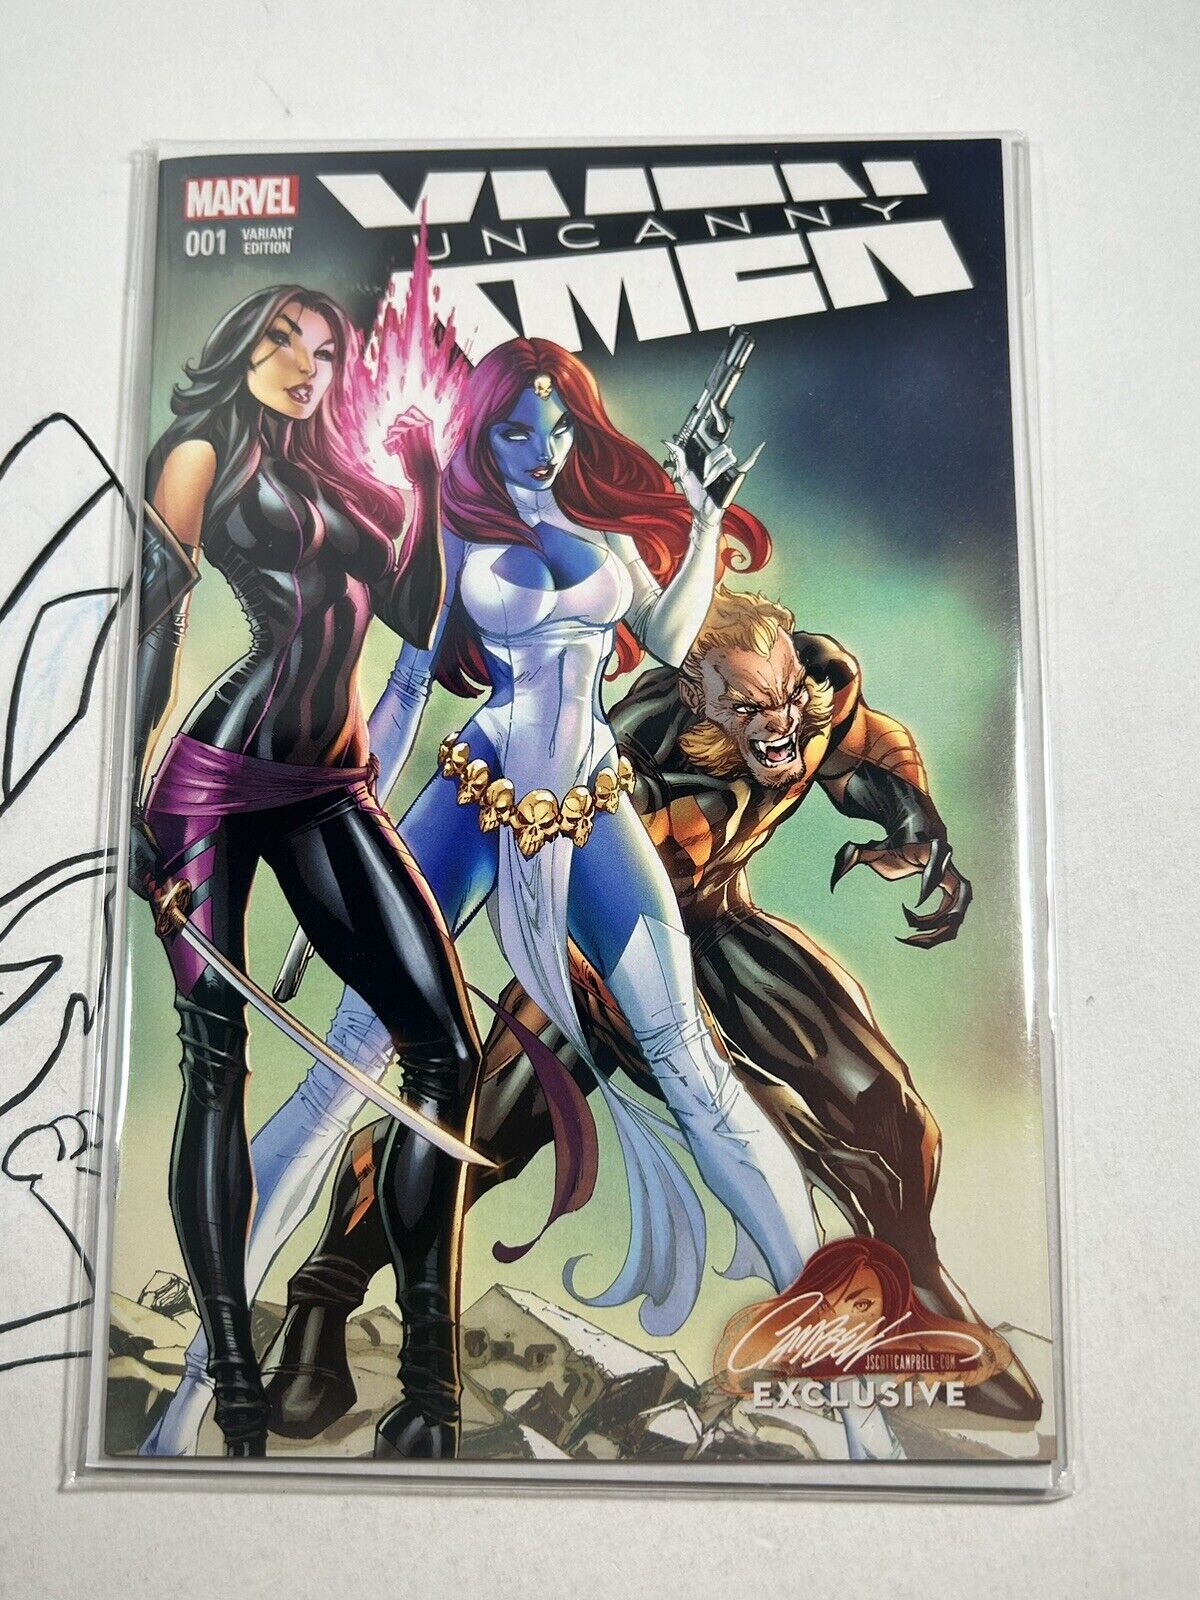 UNCANNY X-MEN #1 J SCOTT CAMPBELL COVER ART MARVEL COMICS EXCLUSIVE VARIANT